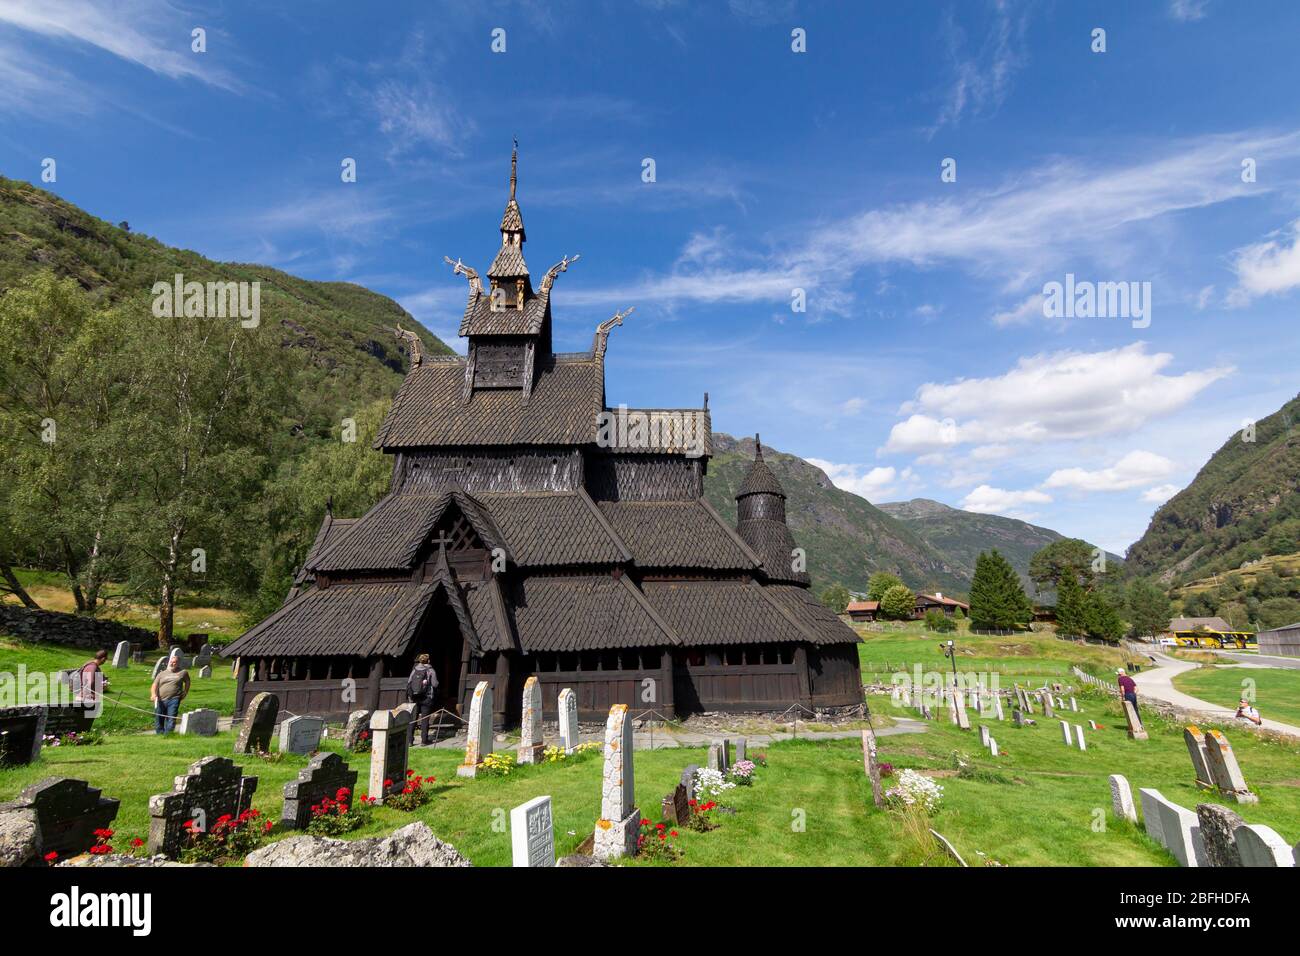 Laerdal, Norvège - 15 août 2019 : ancienne église Borgund Stave à Laerdal, la plus préservée église en bois construite autour de 1200 en Norvège Banque D'Images